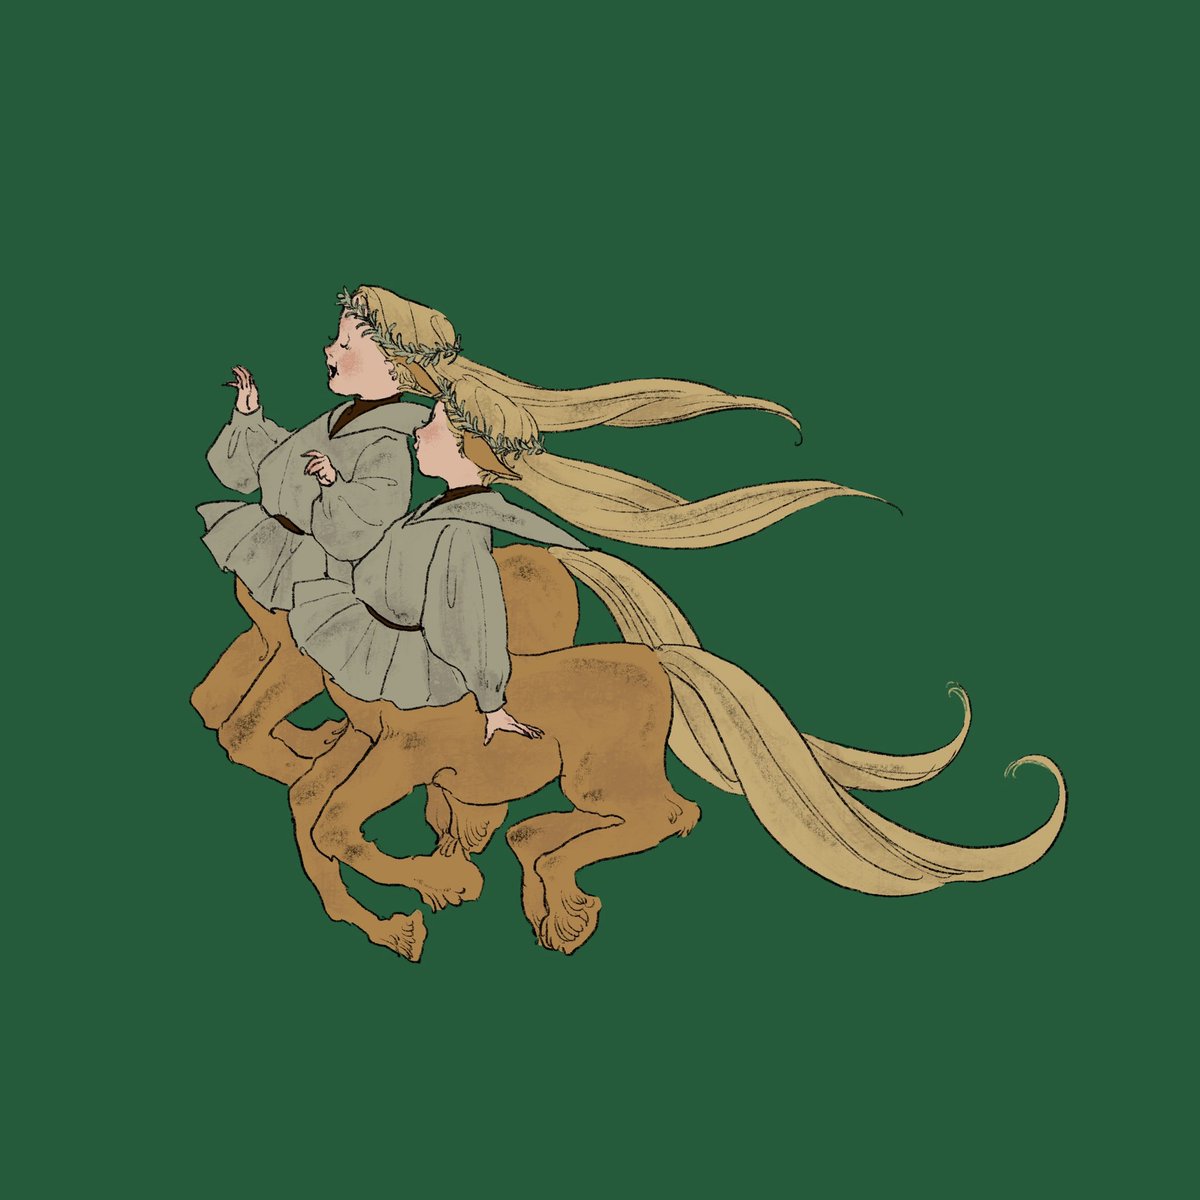 taur simple background green background long sleeves centaur long hair monster girl  illustration images